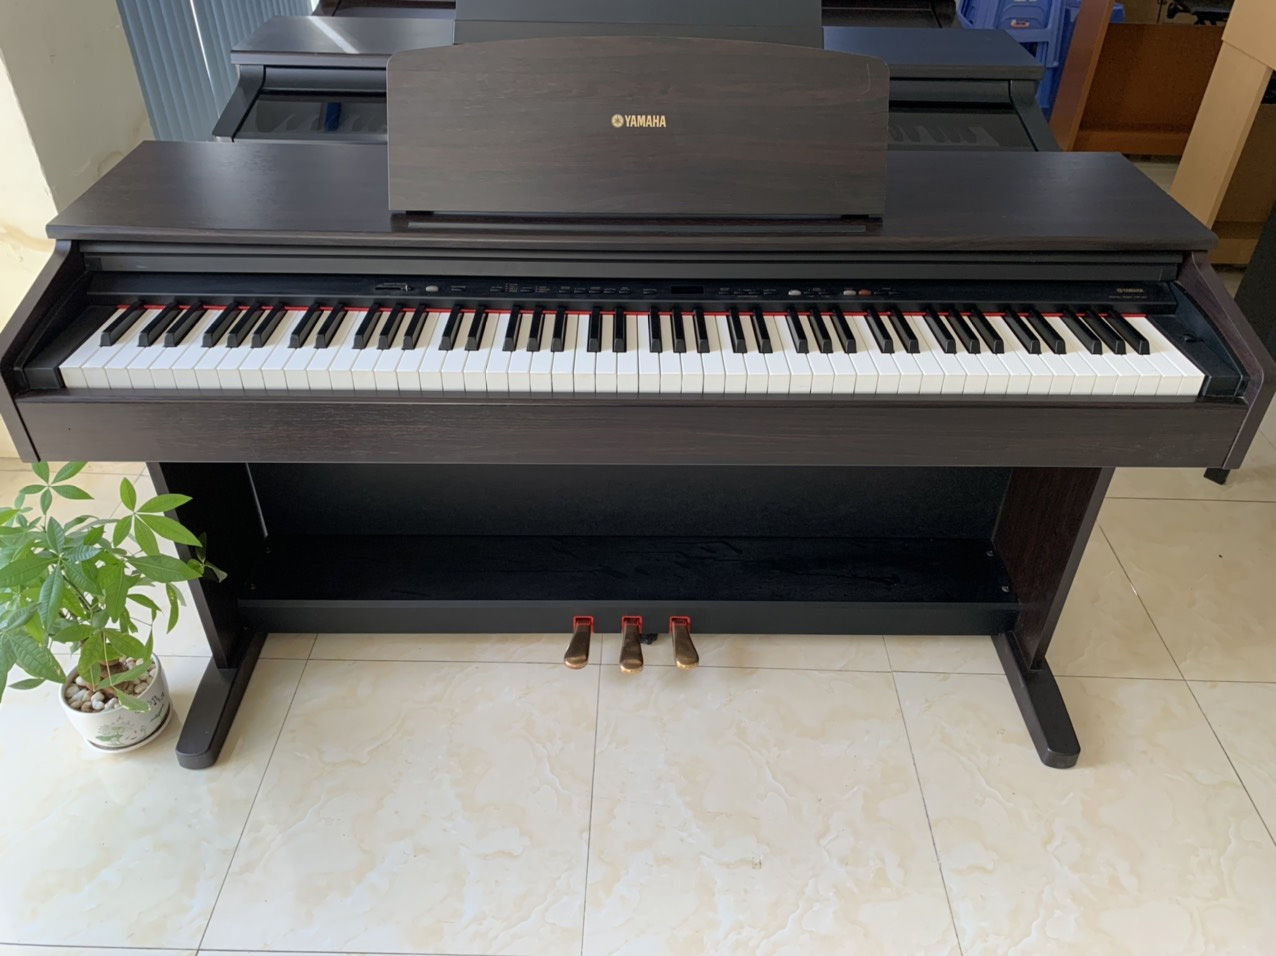 đàn piano điện yamaha ydp201 giá rẻ